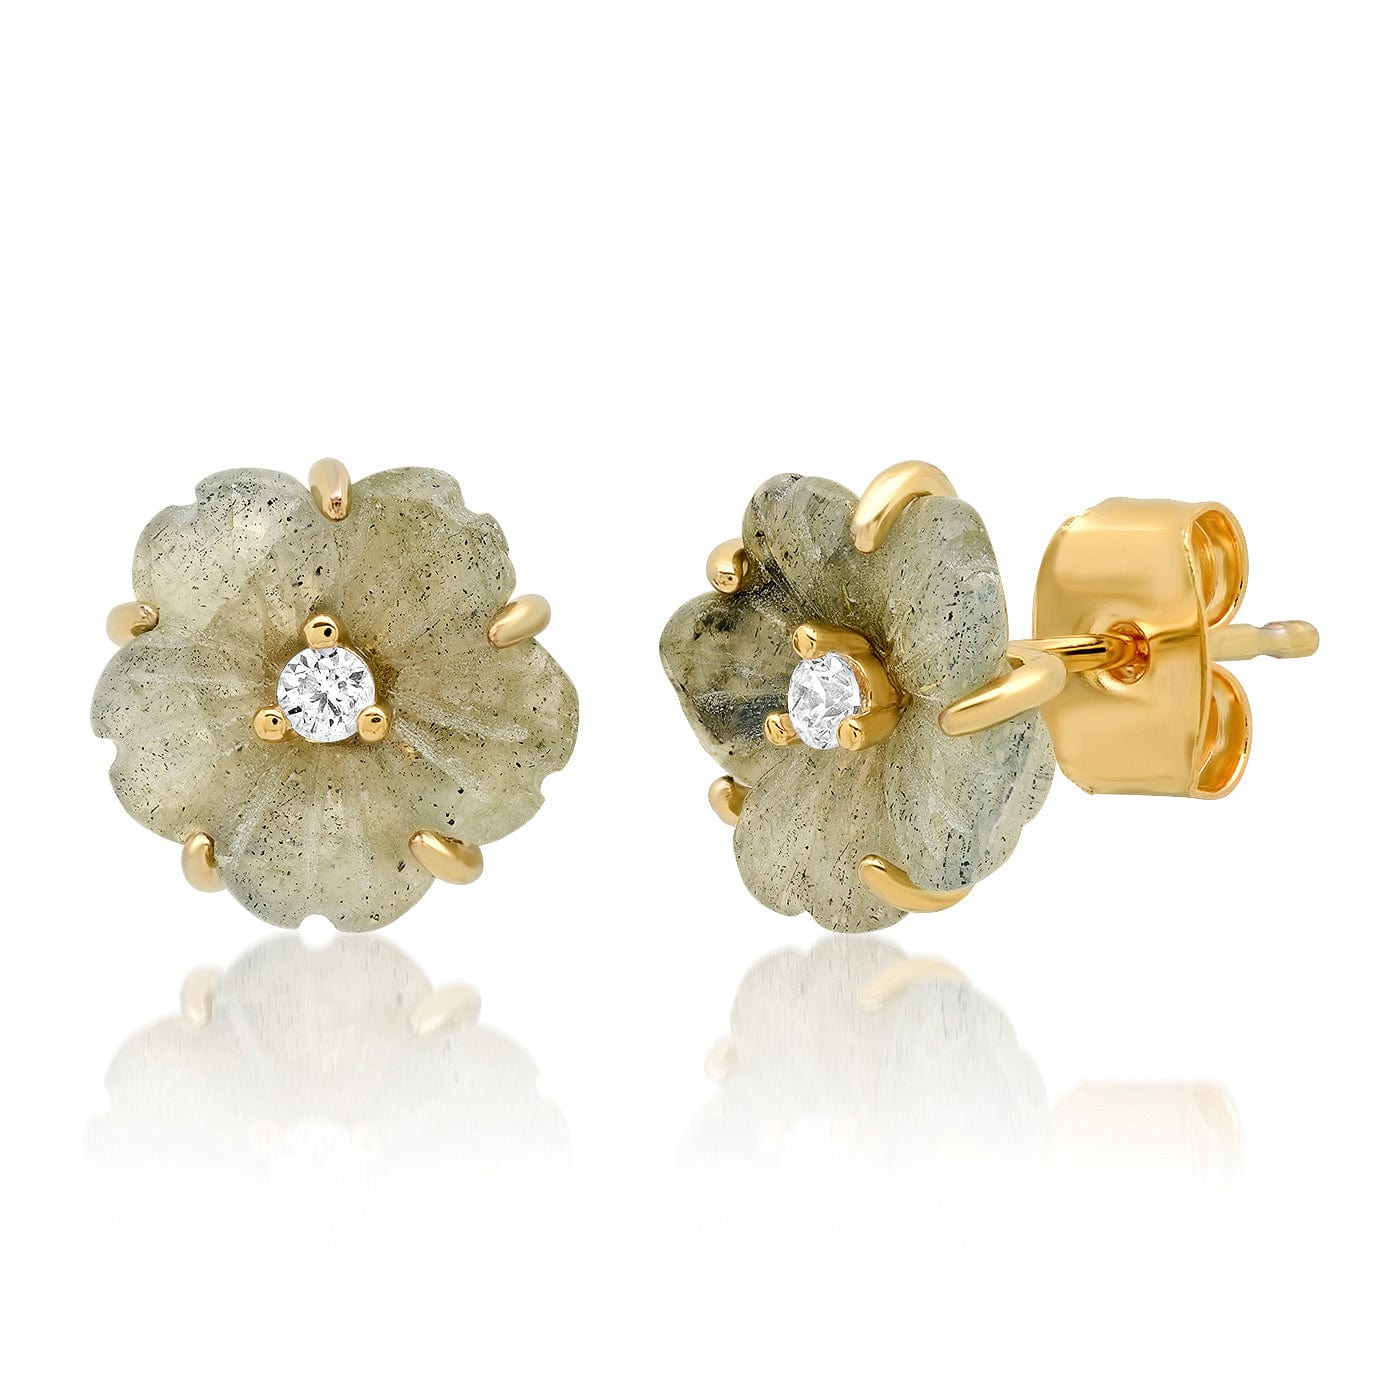 TAI JEWELRY Earrings Labradorite Carved Flower Earrings